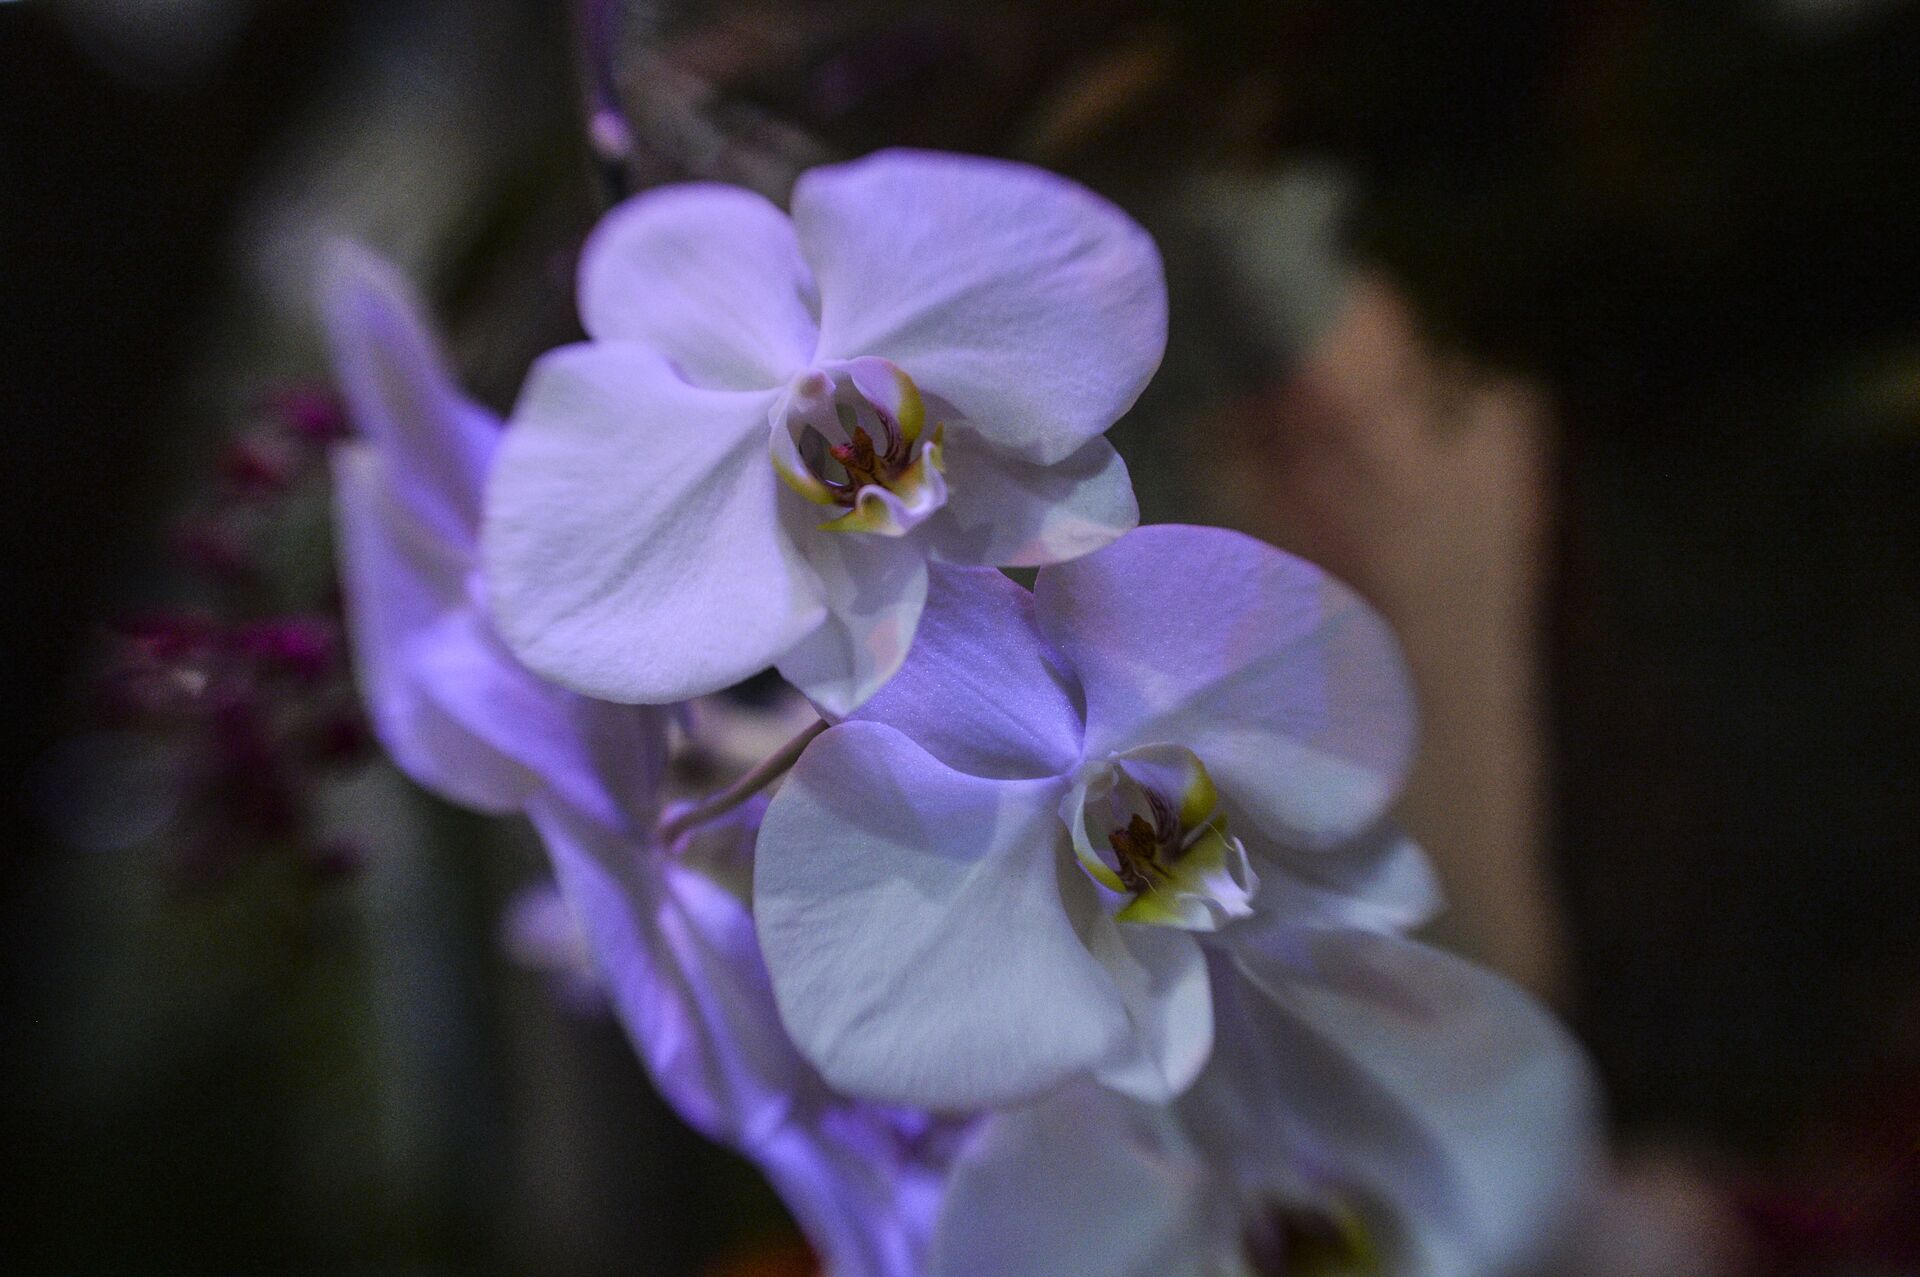 Фото: загадочные орхидеи - цветы романтиков и мистиков - Sputnik Молдова, 1920, 04.04.2021